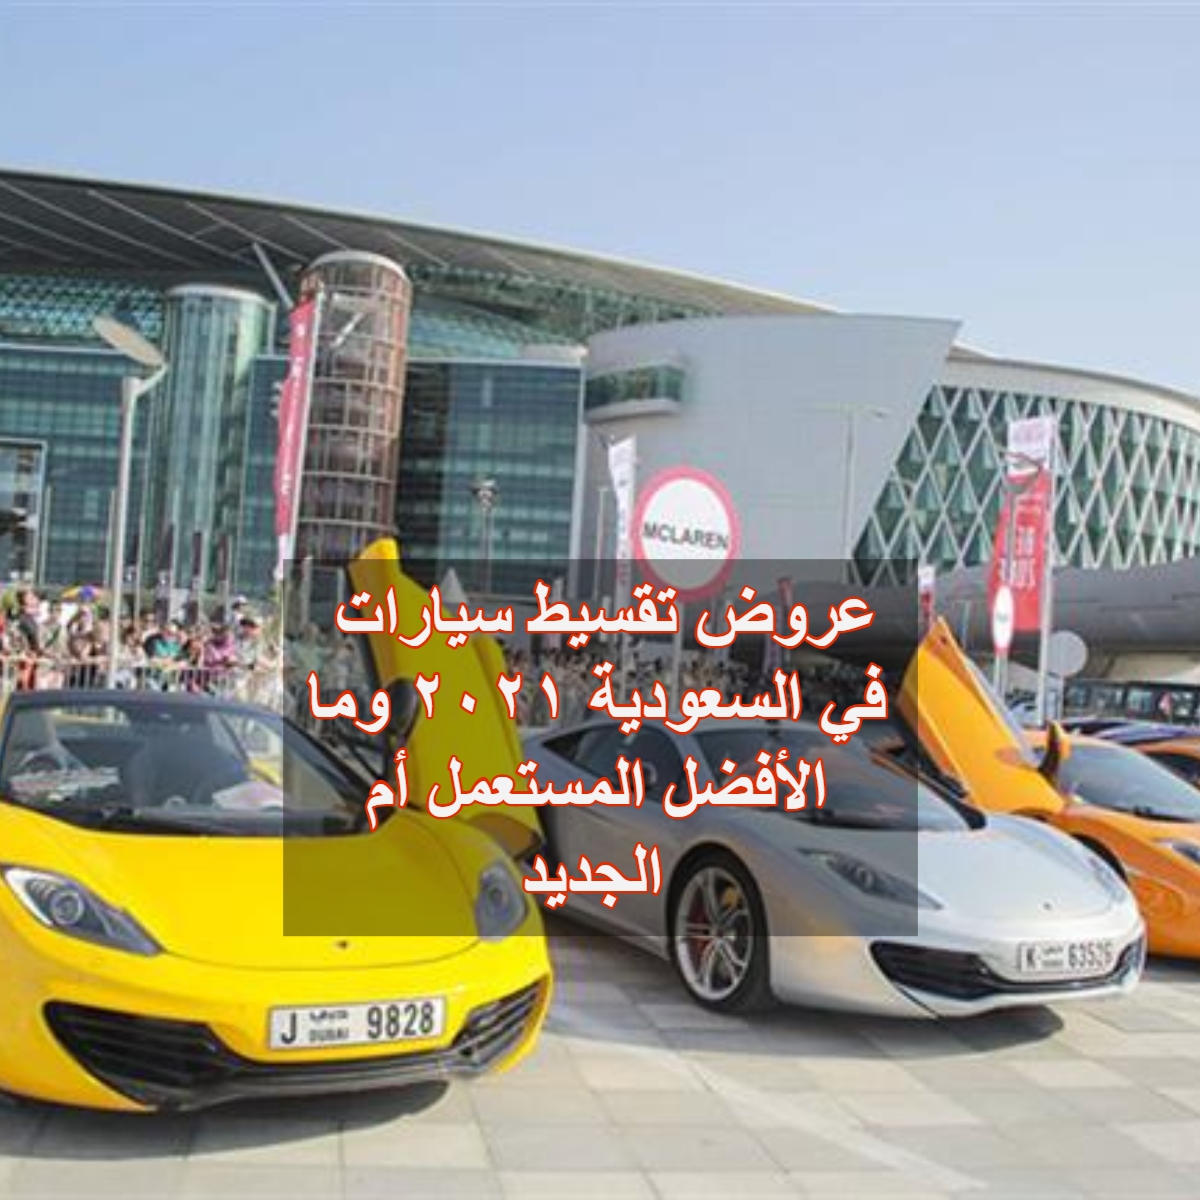 عروض تقسيط سيارات في السعودية ٢٠٢١ وما الأفضل المستعمل أم الجديد